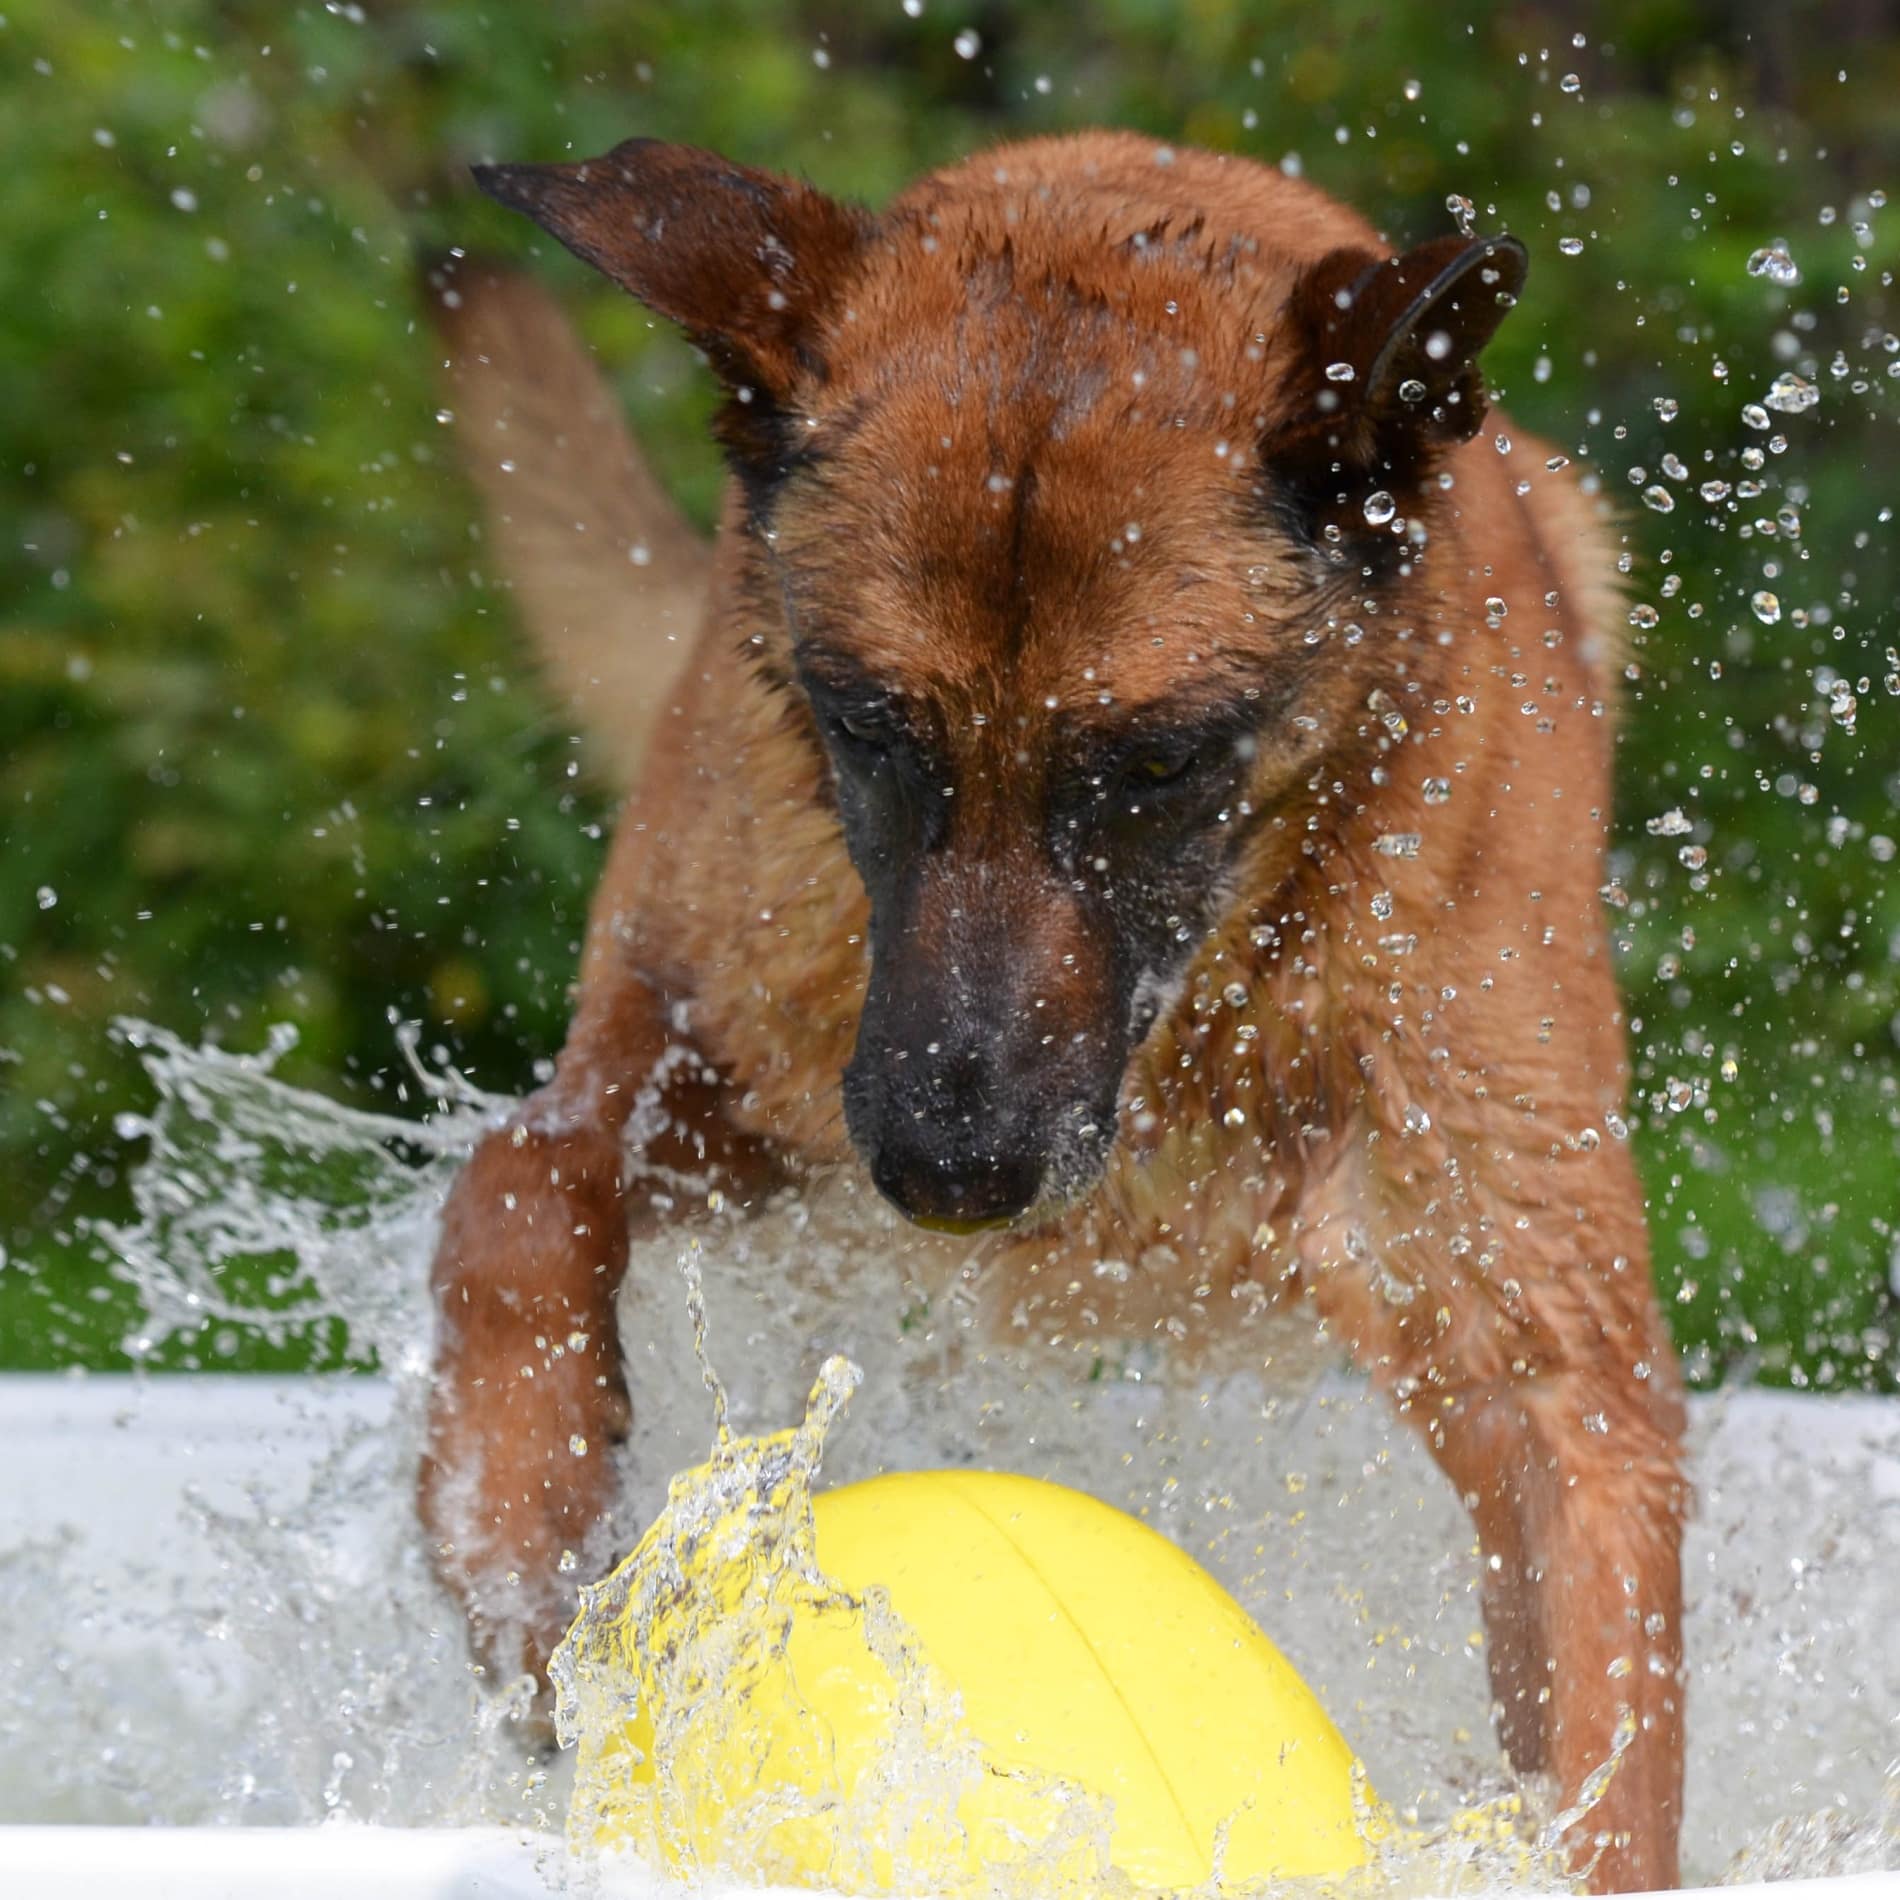 Ein Hund lässt das Wasser aufspritzen, während er im Garten der Ferienwohnung mit einem gelben Ball spielt